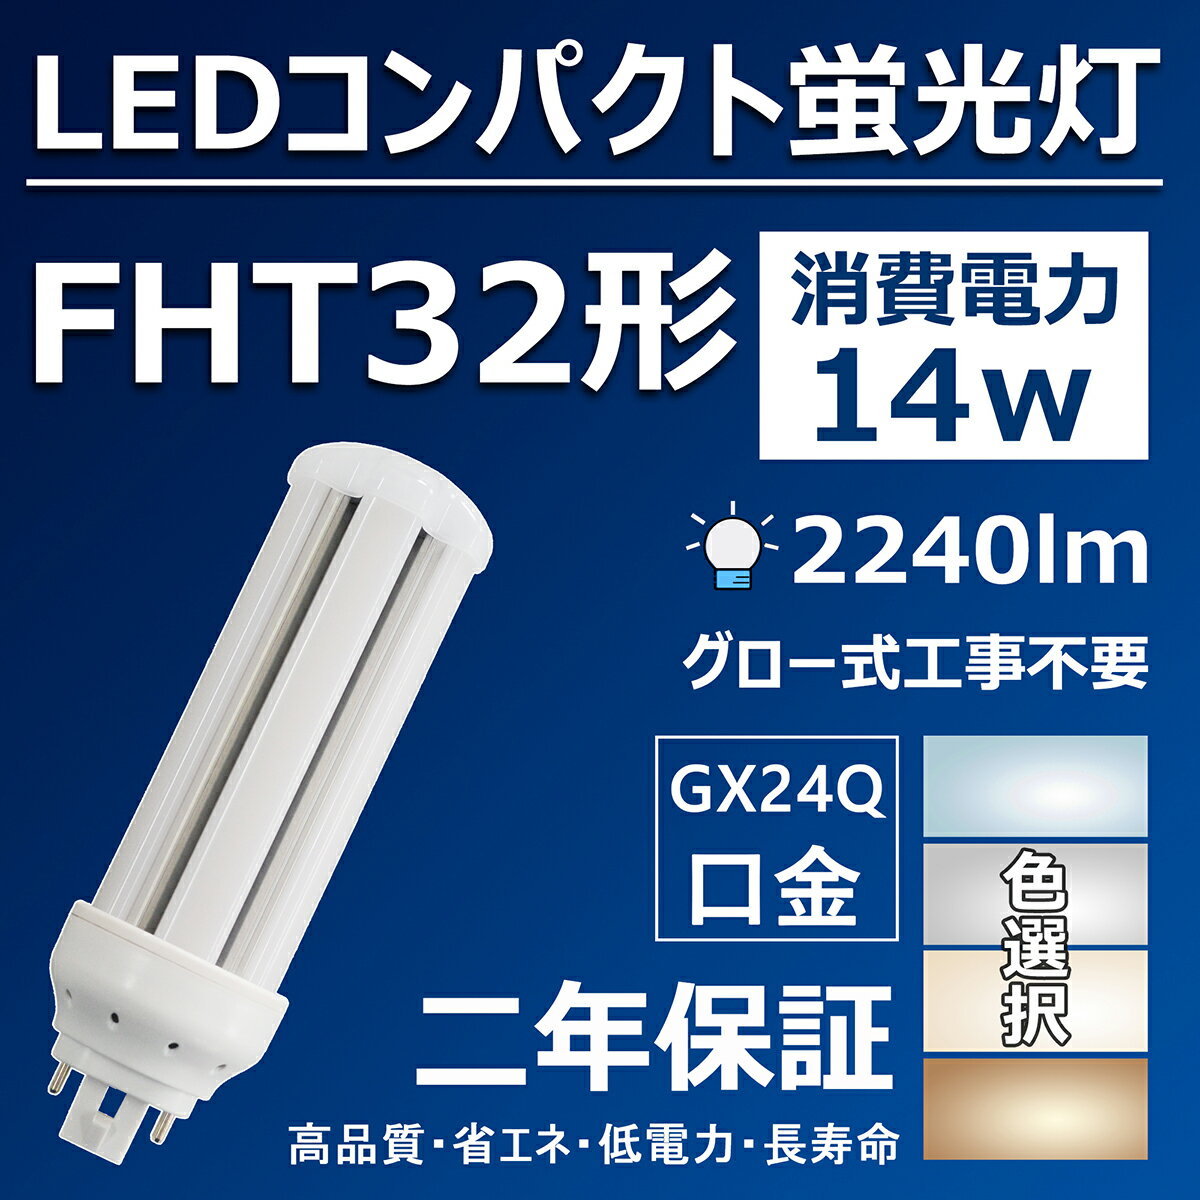 LEDRpNgu FHT32` LEDu GX24Q fht32 fht32ex LED 14w 2240lm LEDuv fht32ex-l fht32ex-w fht32ex-n fht32ex-d VƖ fht32exn ledd ledƖ  cCuyFIz